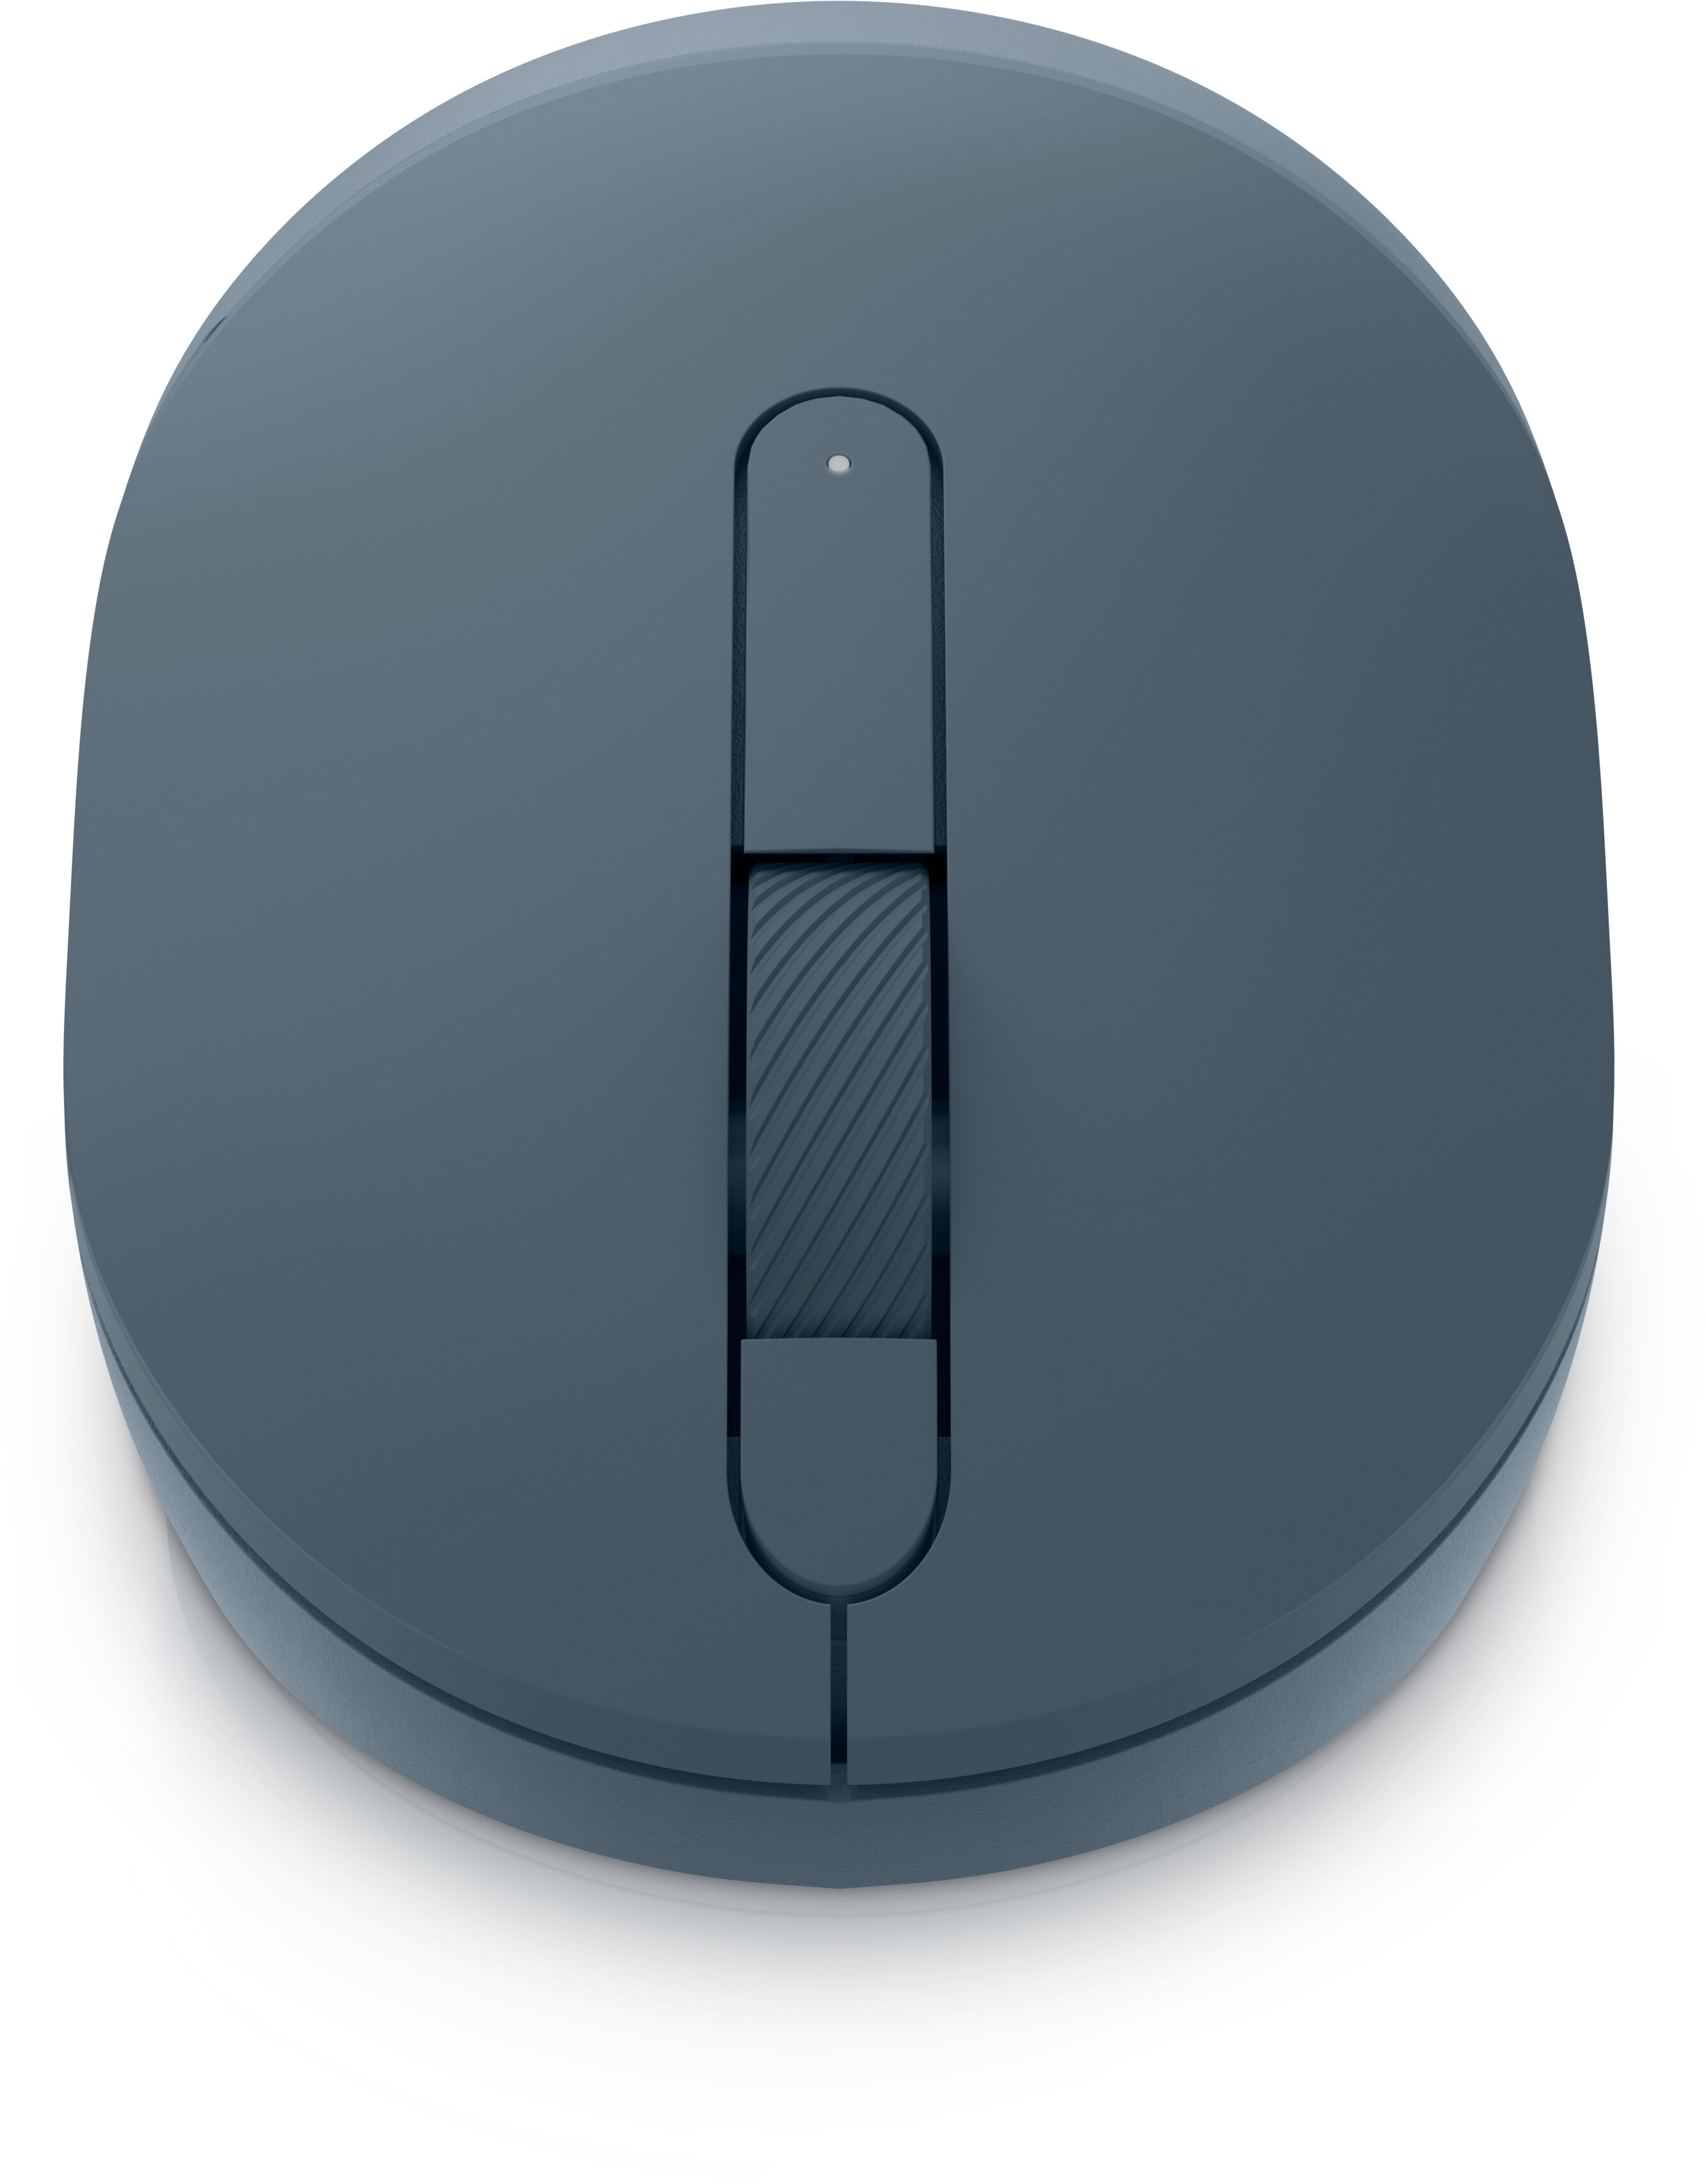 Mouse portatile senza fili Dell - MS3320W - Midnight Green (verde